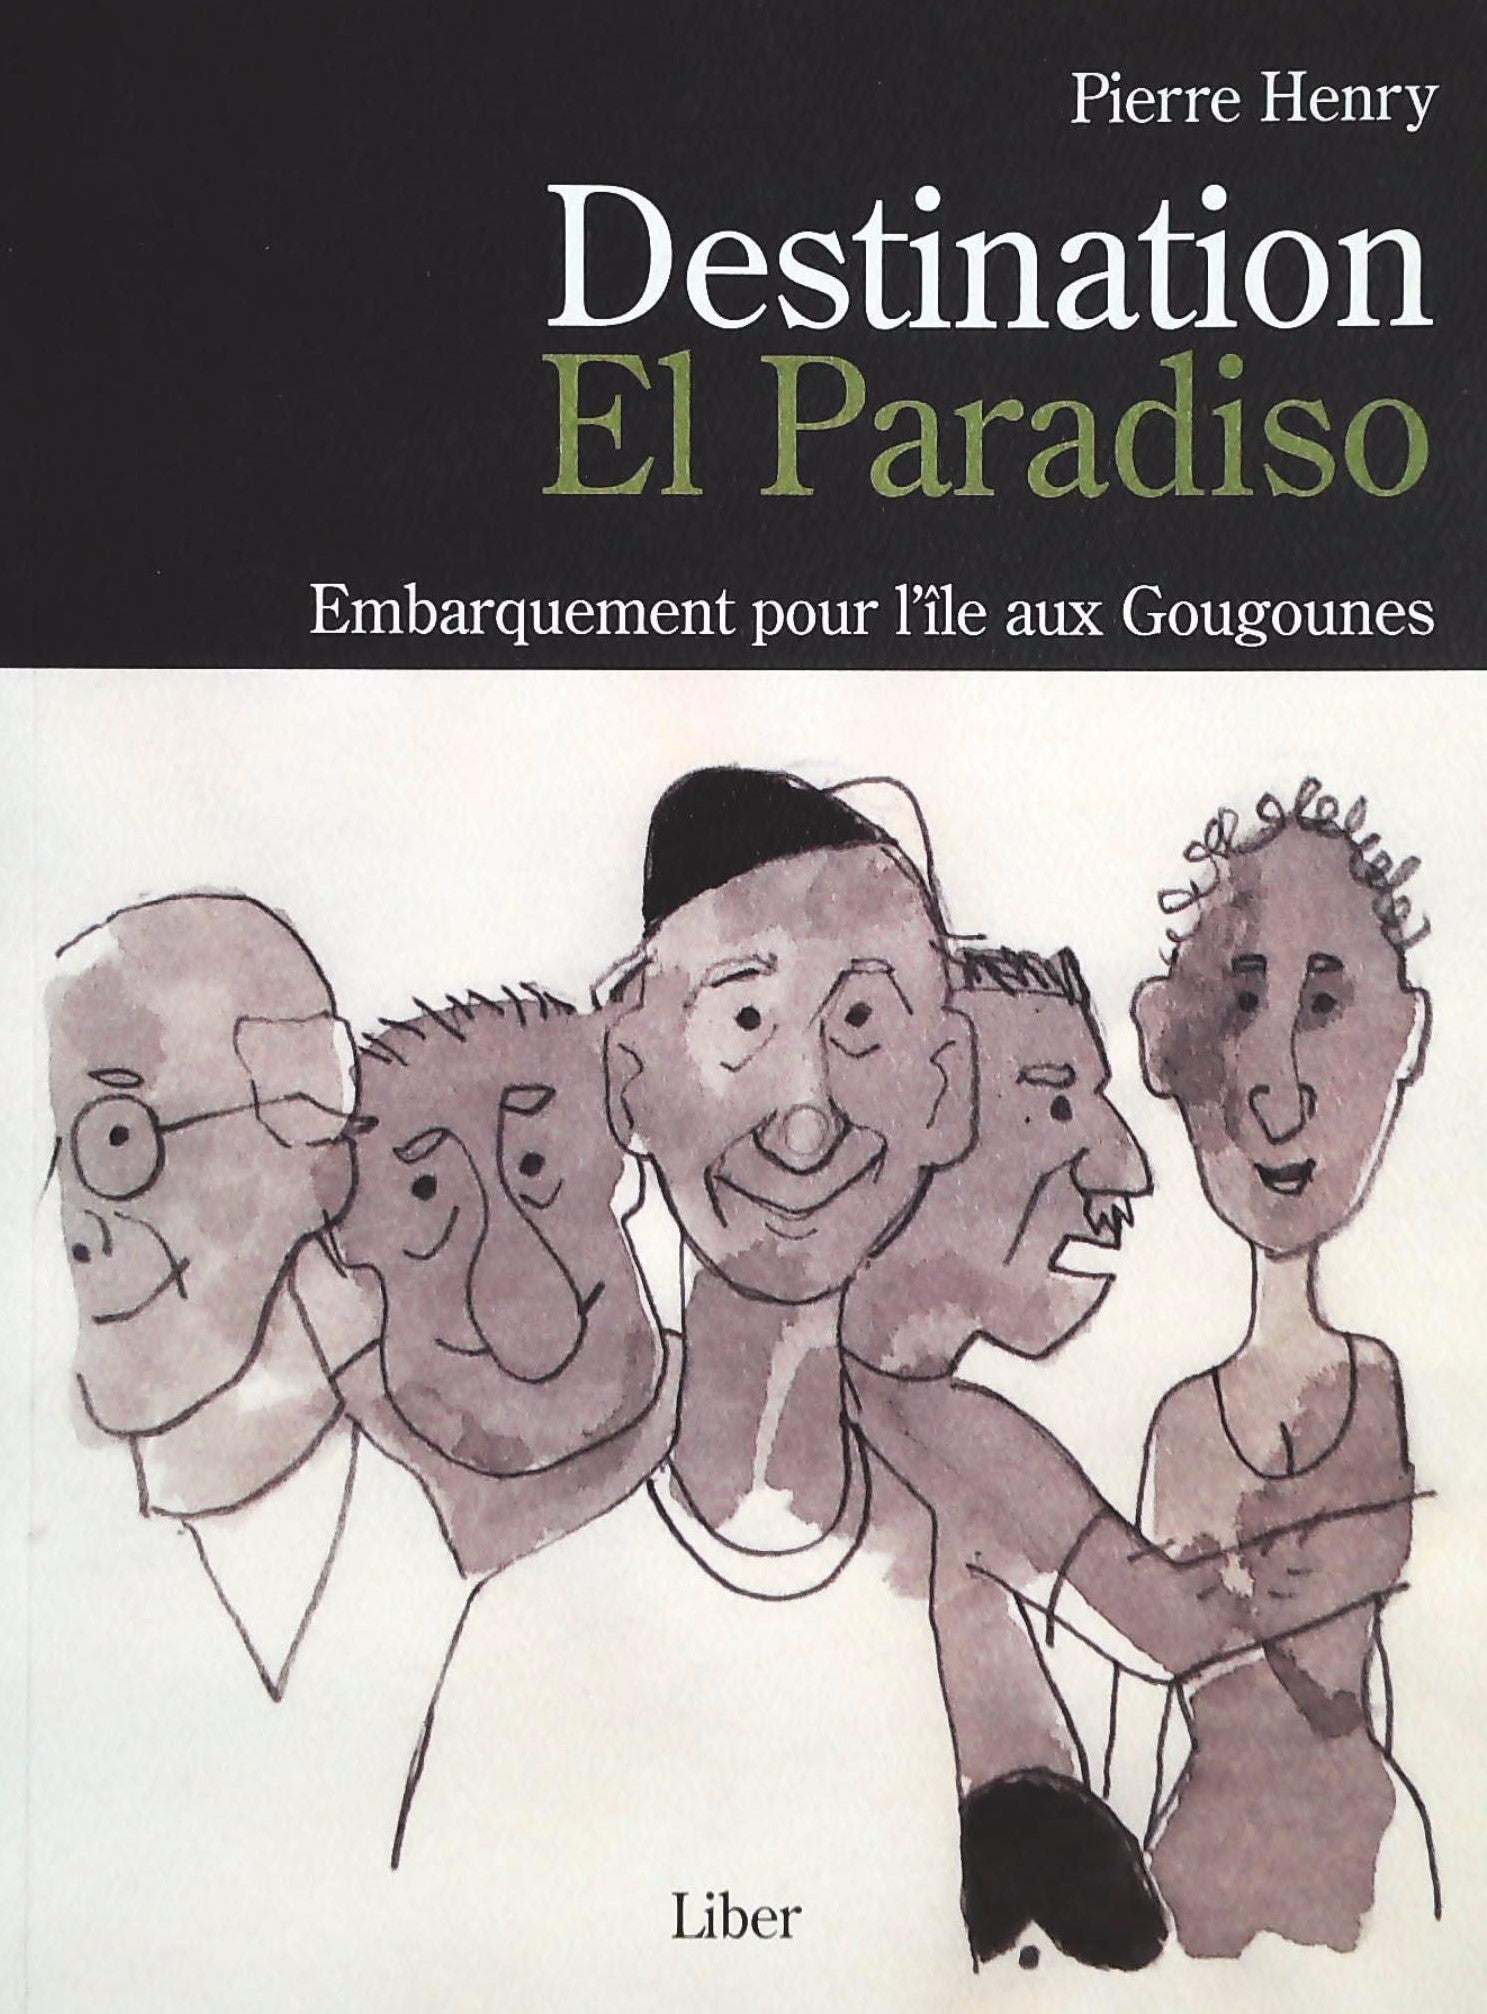 Livre ISBN 2895782067 Destination El Paradiso : Embarquement pour l'île au Gougounes (Pierre Henry)